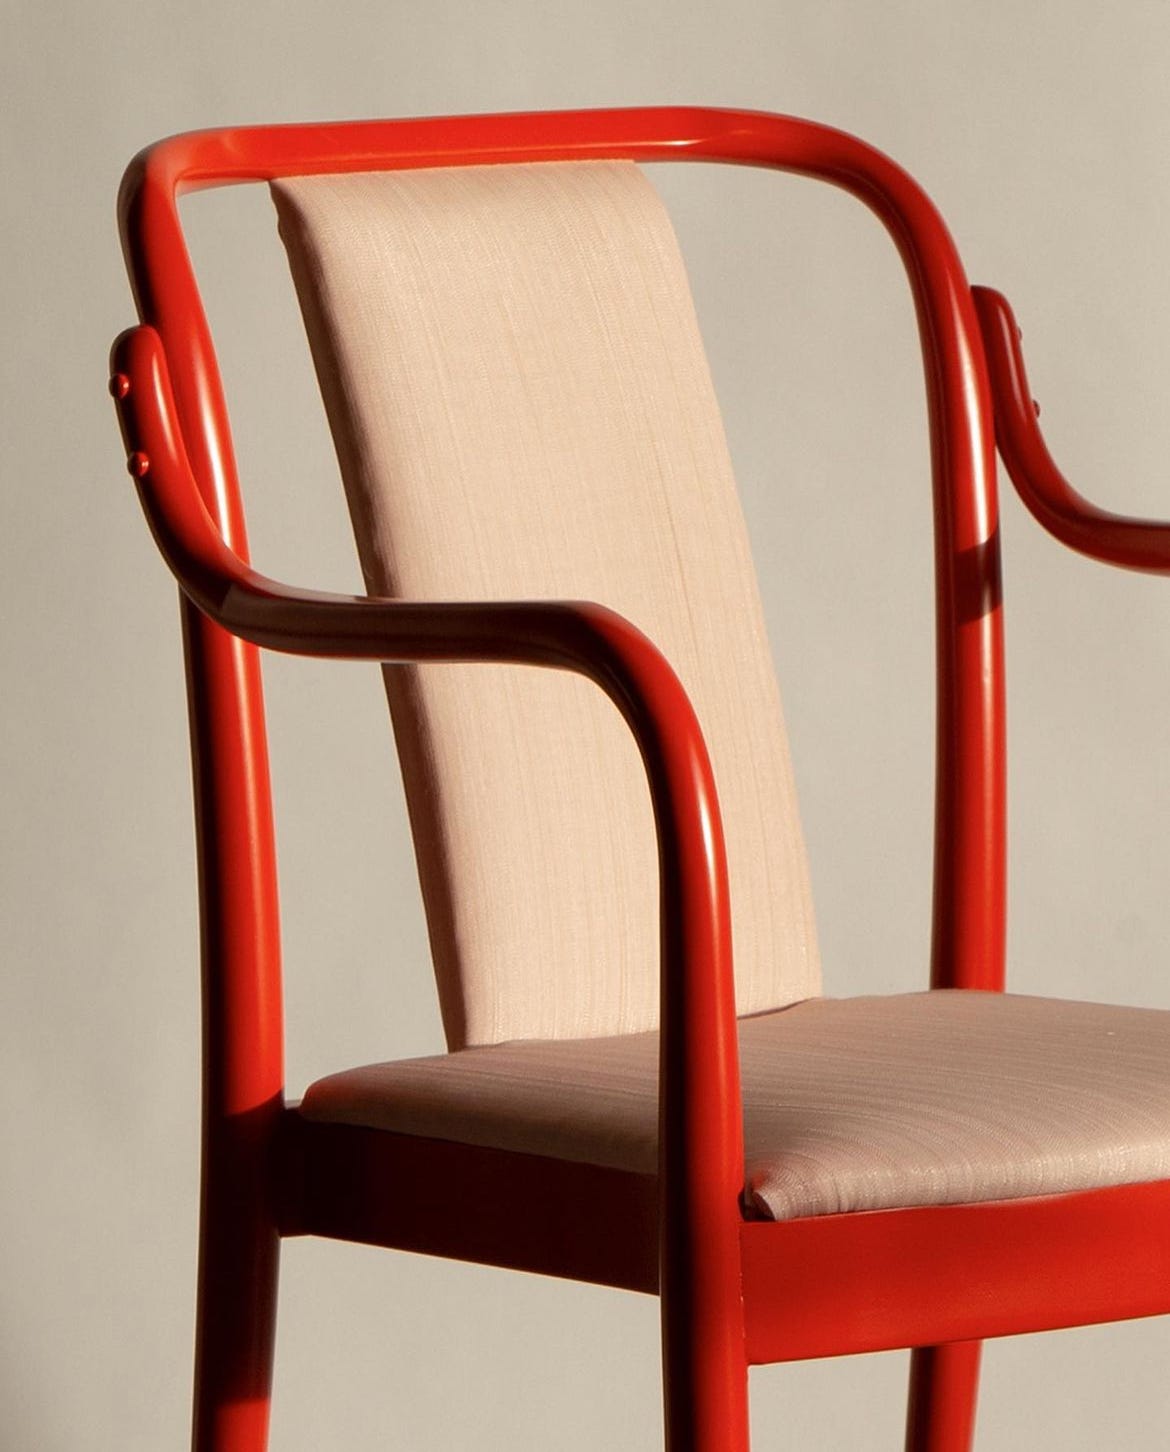 A red chair by Beata Heuman.